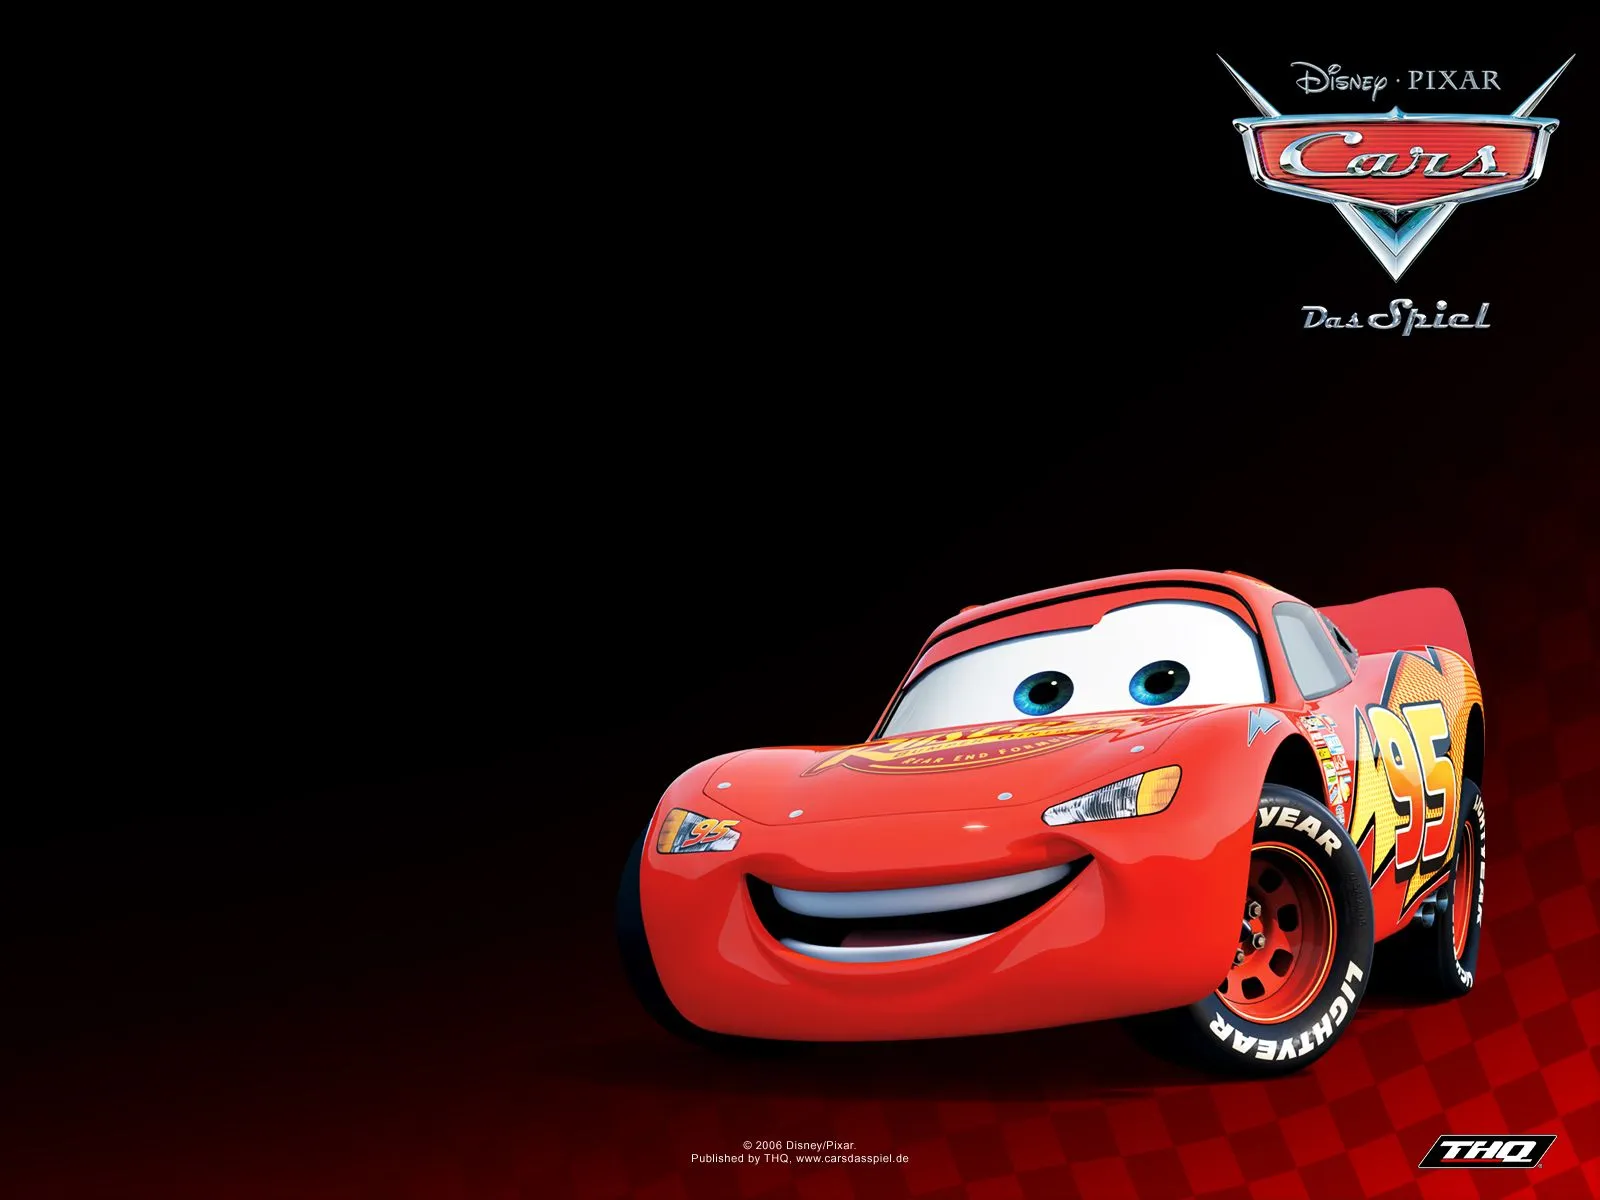 imagina: cars 2 ya tiene fecha de estreno sera en junio de 2011